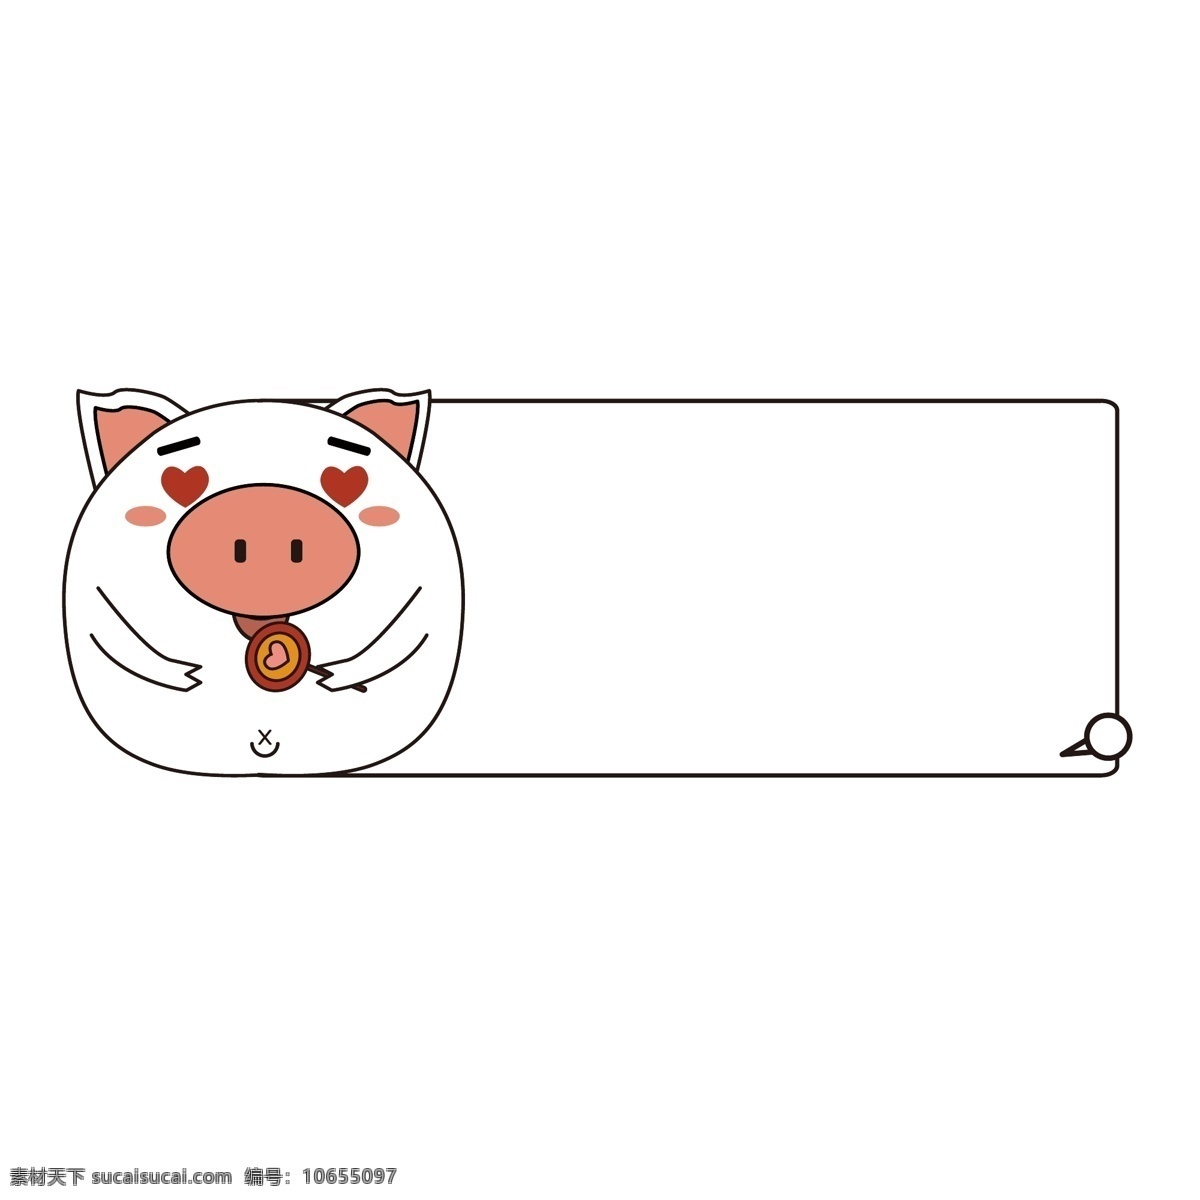 猪 表情 包 卡通 动物 边框 商用 元素 表情包 可商用